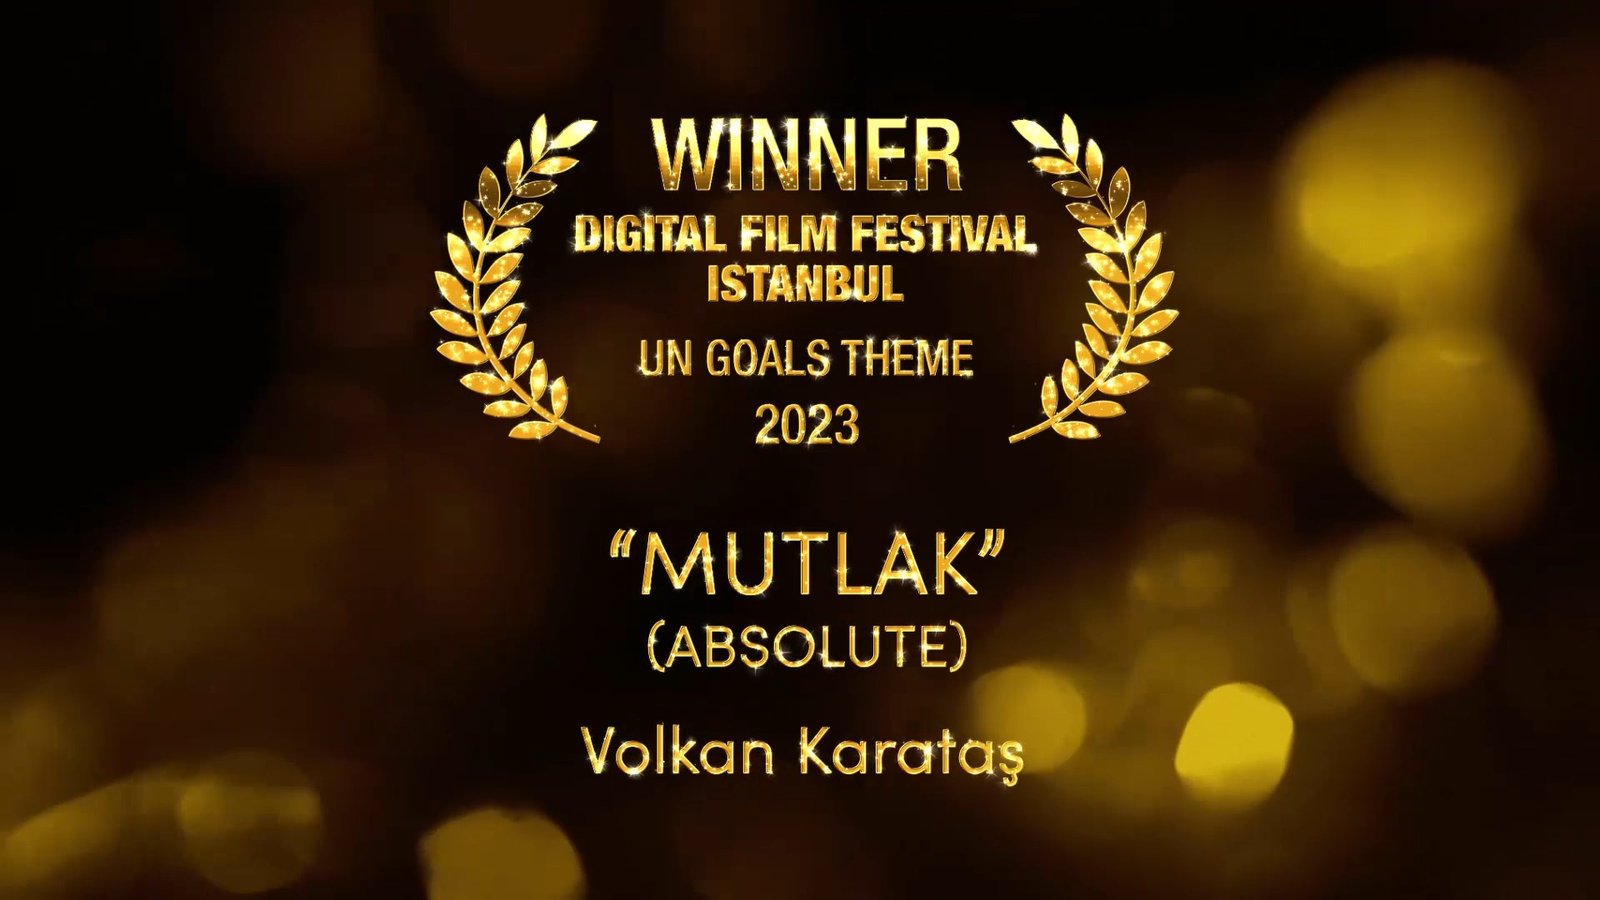 Uluslararası Digital Film Festival İstanbul Ödülleri Sahiplerini Buldu 1 (9)